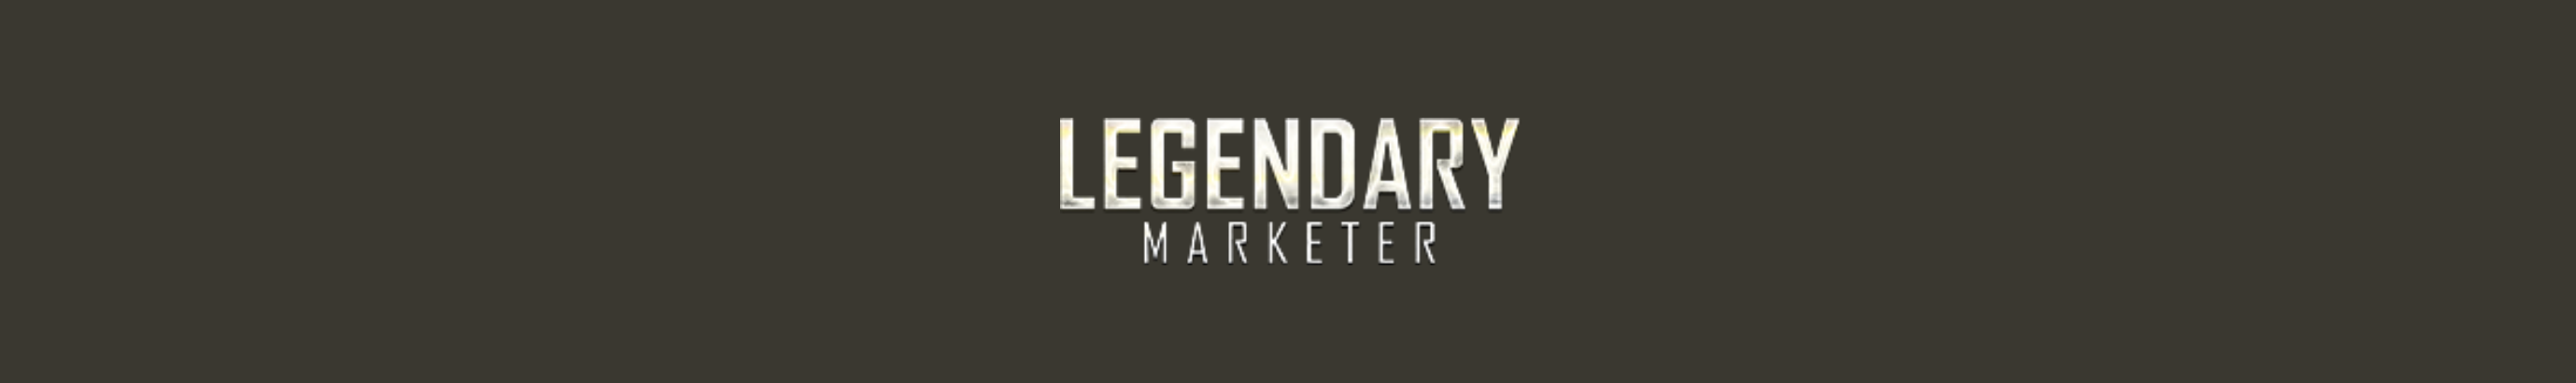 Legendary Marketer's profile banner